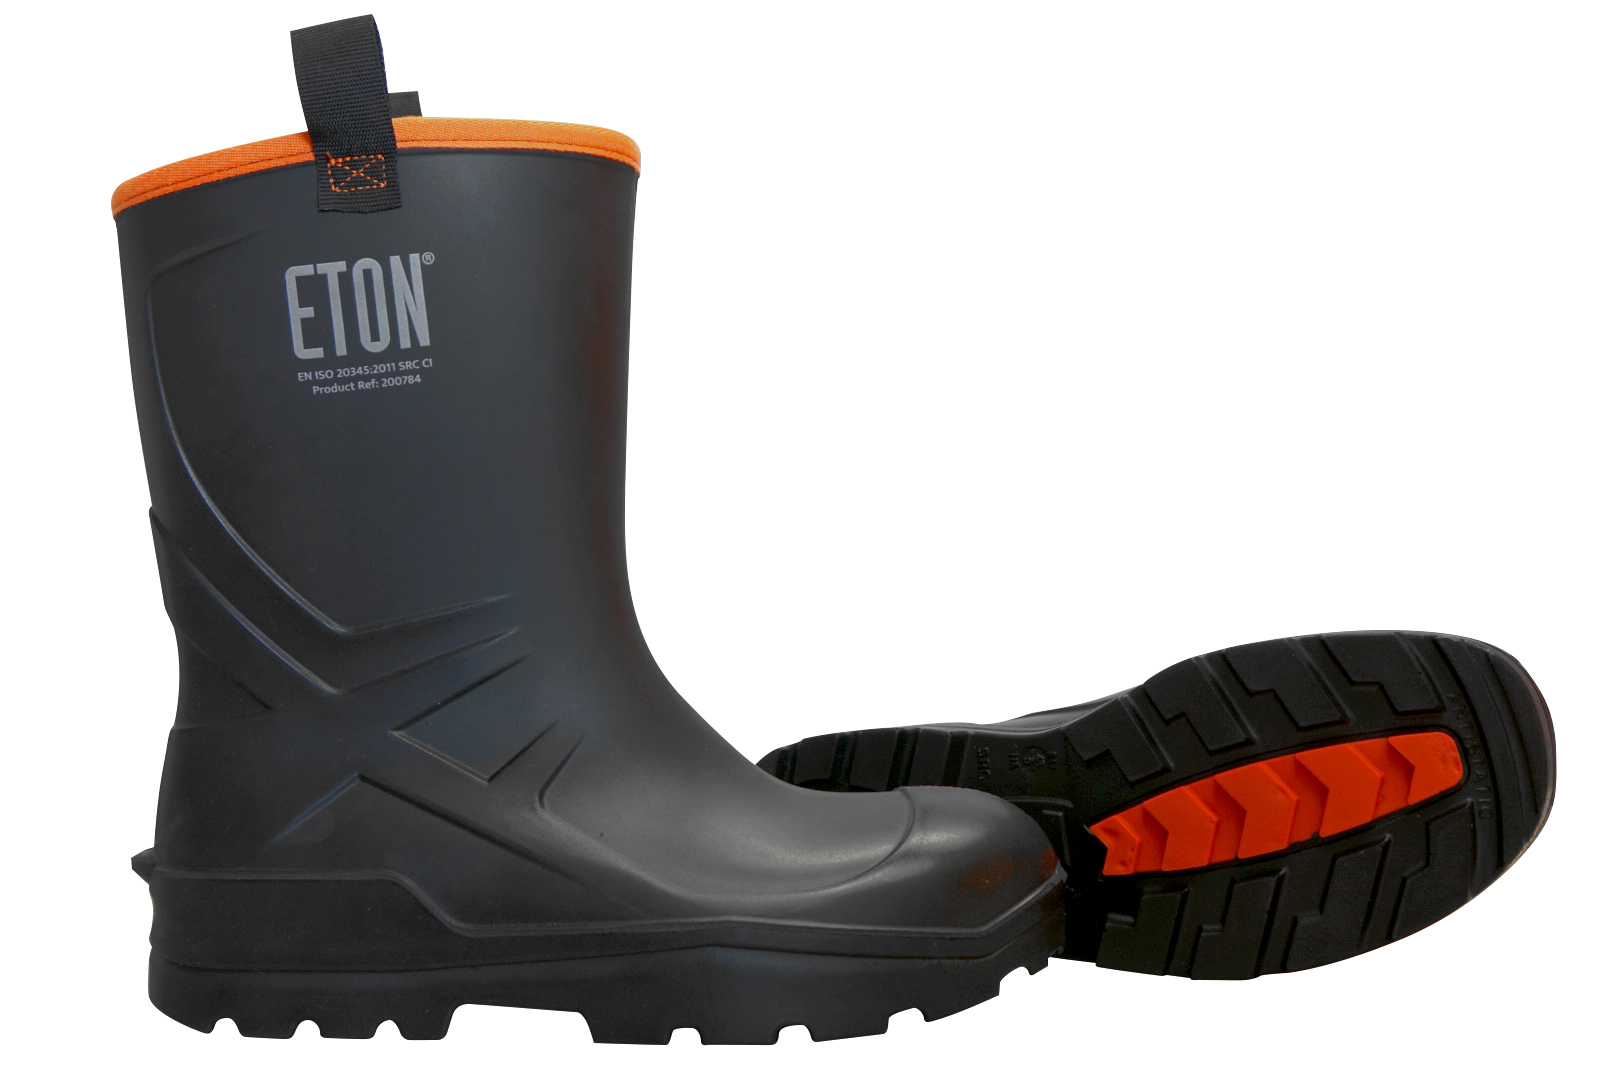 ETON DuraBoot Rigger Full Safety Boot - Black, Size 11